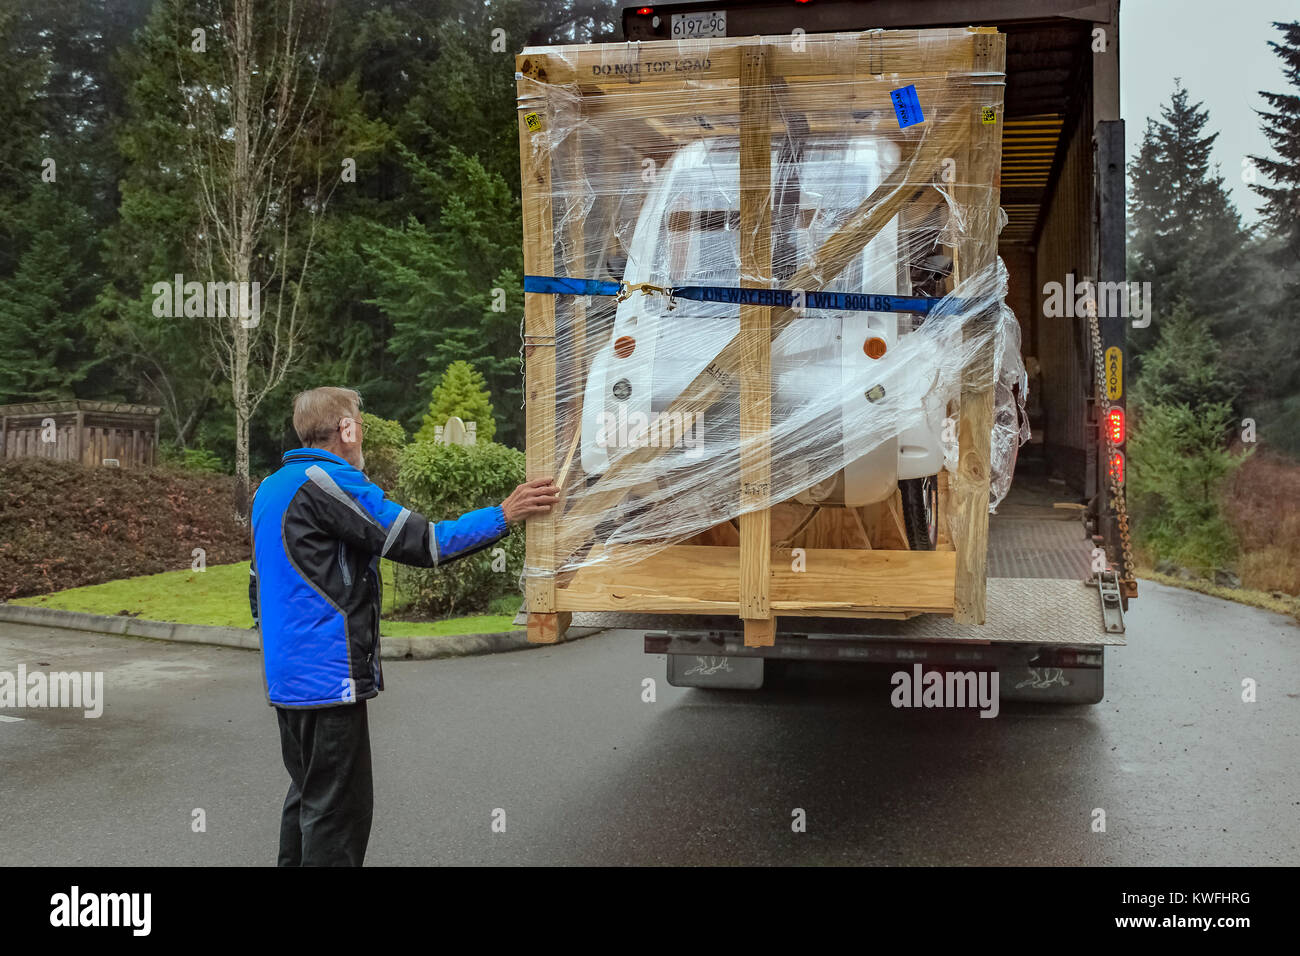 Ein älterer Mann in einen blauen Mantel Versand berührt eine große Kiste mit eine neue elektrische ELF Dreirad, als er für einen Transport LKW zu entladen wartet. Stockfoto